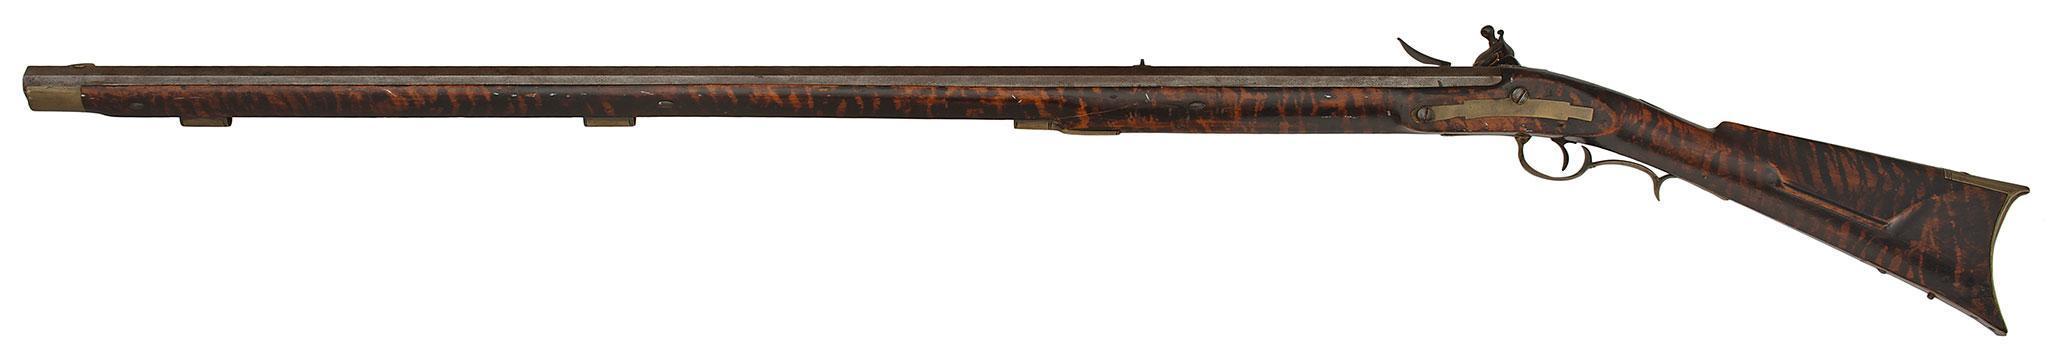 Fullstock Flintlock Chiefs Grade Rifle By J. Fordney Of Lancaster PA